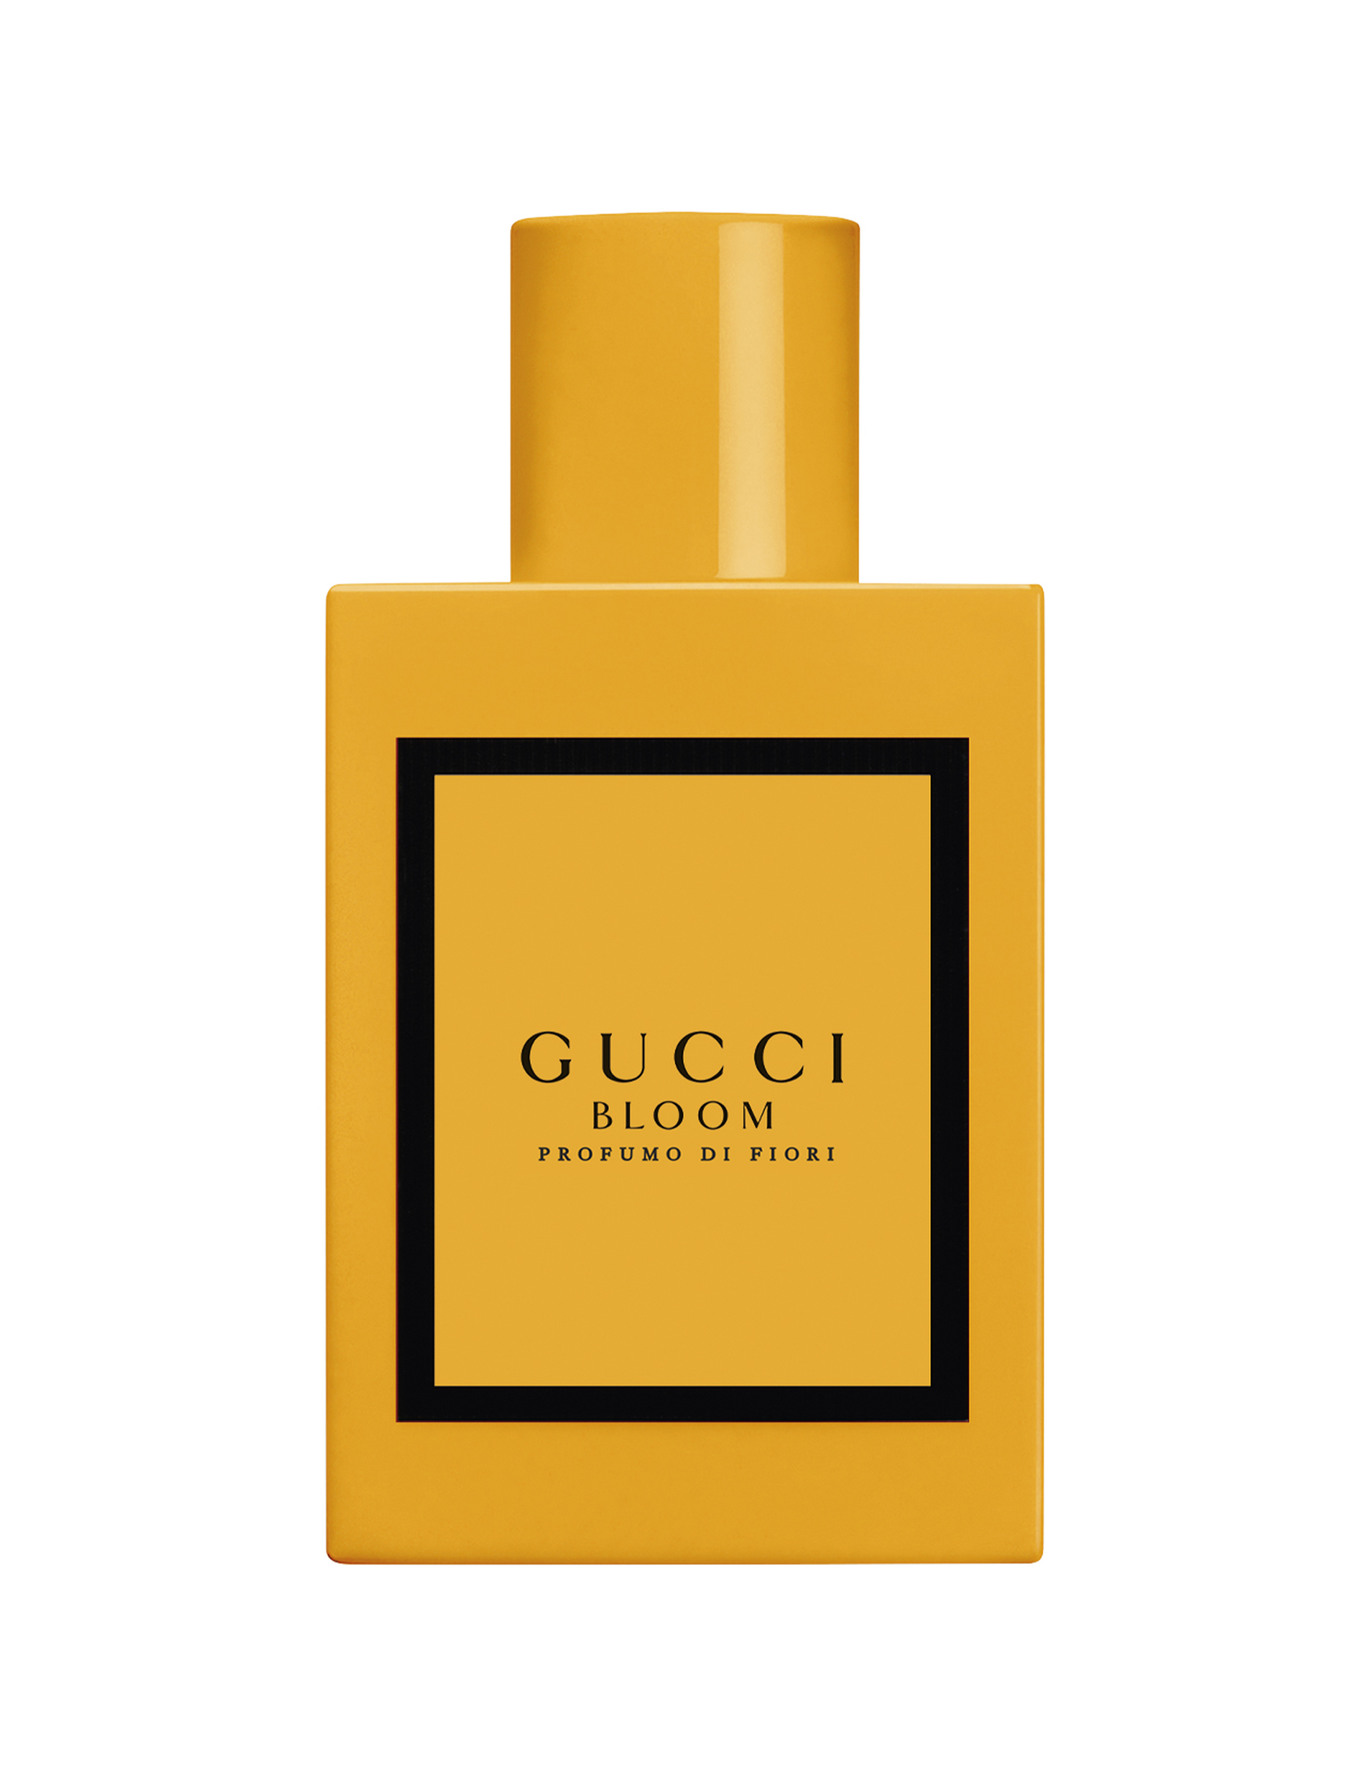 Sæt tabellen op PEF i dag Køb Gucci Bloom Profumo Di Fiori Eau de Parfum 50 ml - Matas